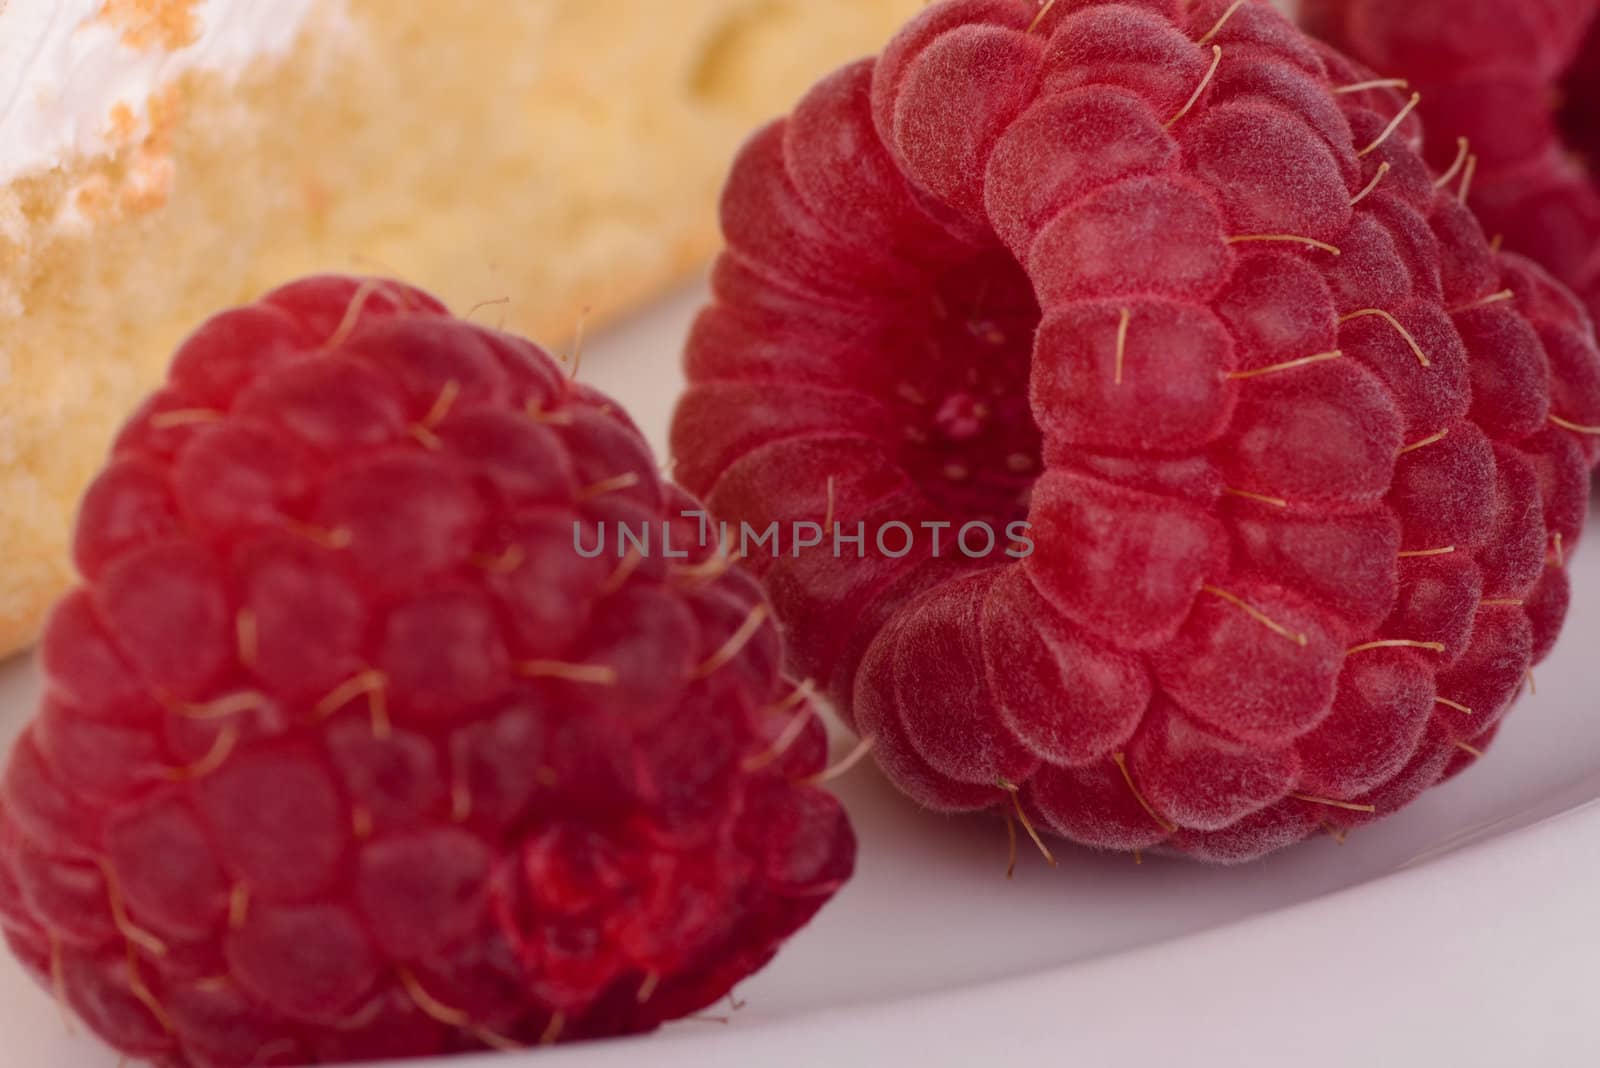 Ripe raspberries in closeup.